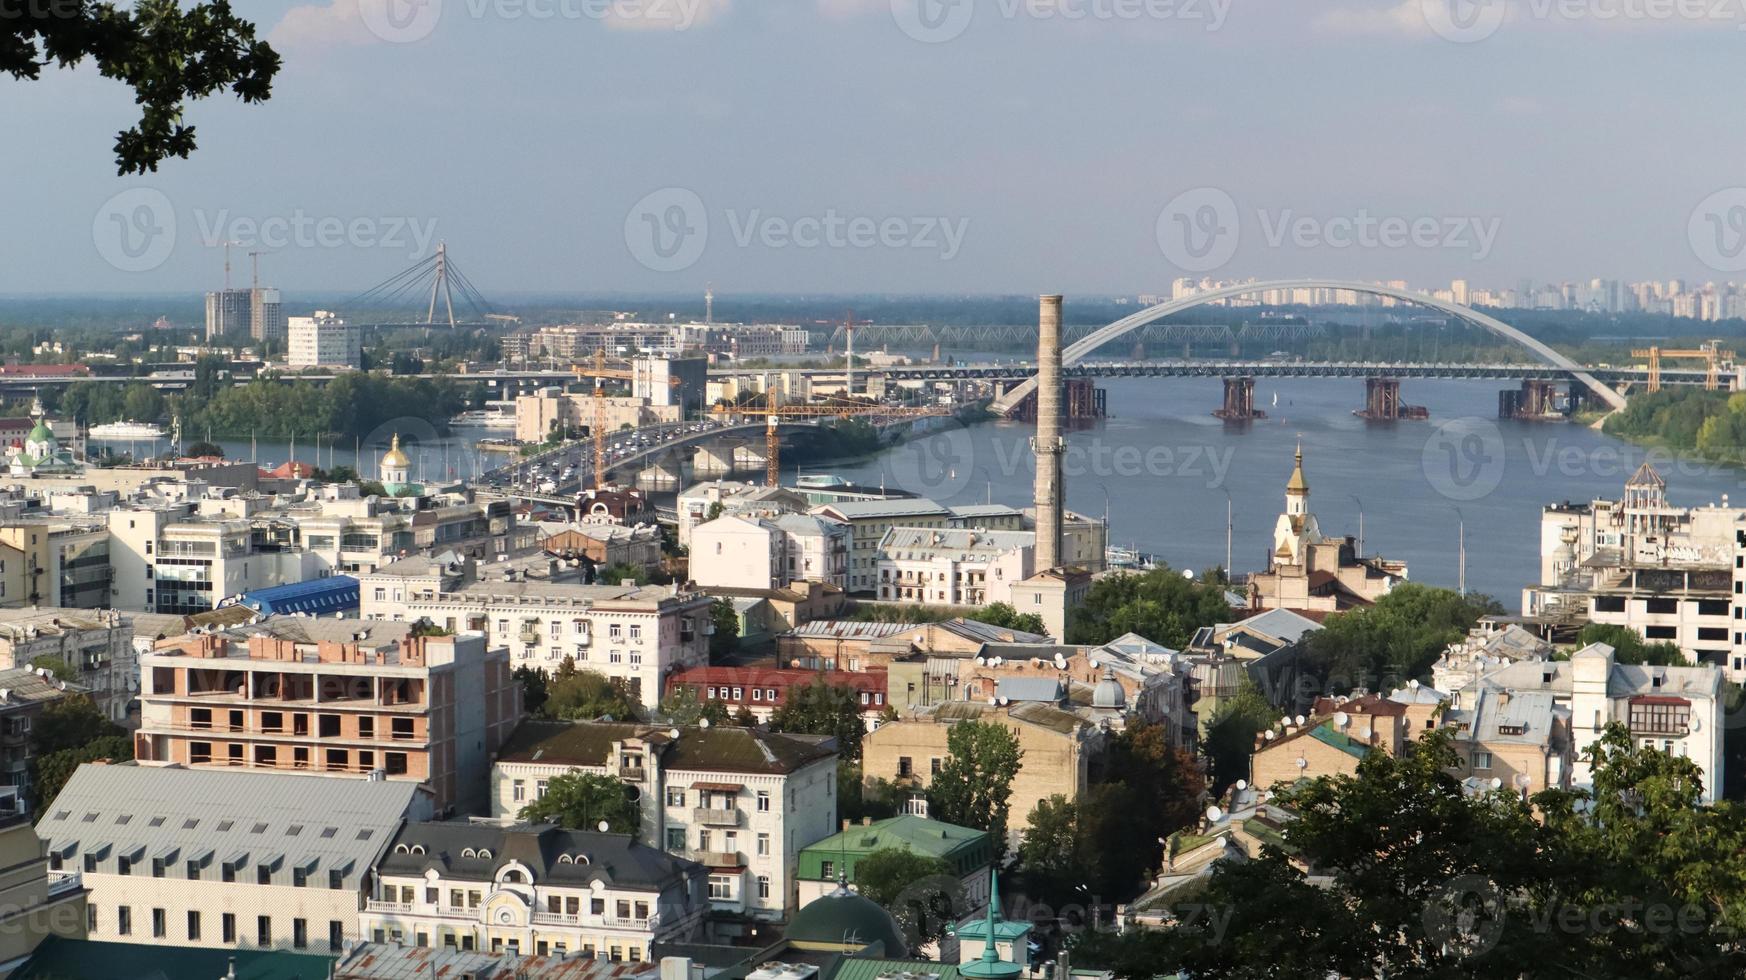 vista superior da antiga parte histórica da cidade de kiev. área de vozdvizhenka em podol e o rio dnieper da ponte pedonal. bela paisagem da cidade. ucrânia, kiev - 6 de setembro de 2020. foto